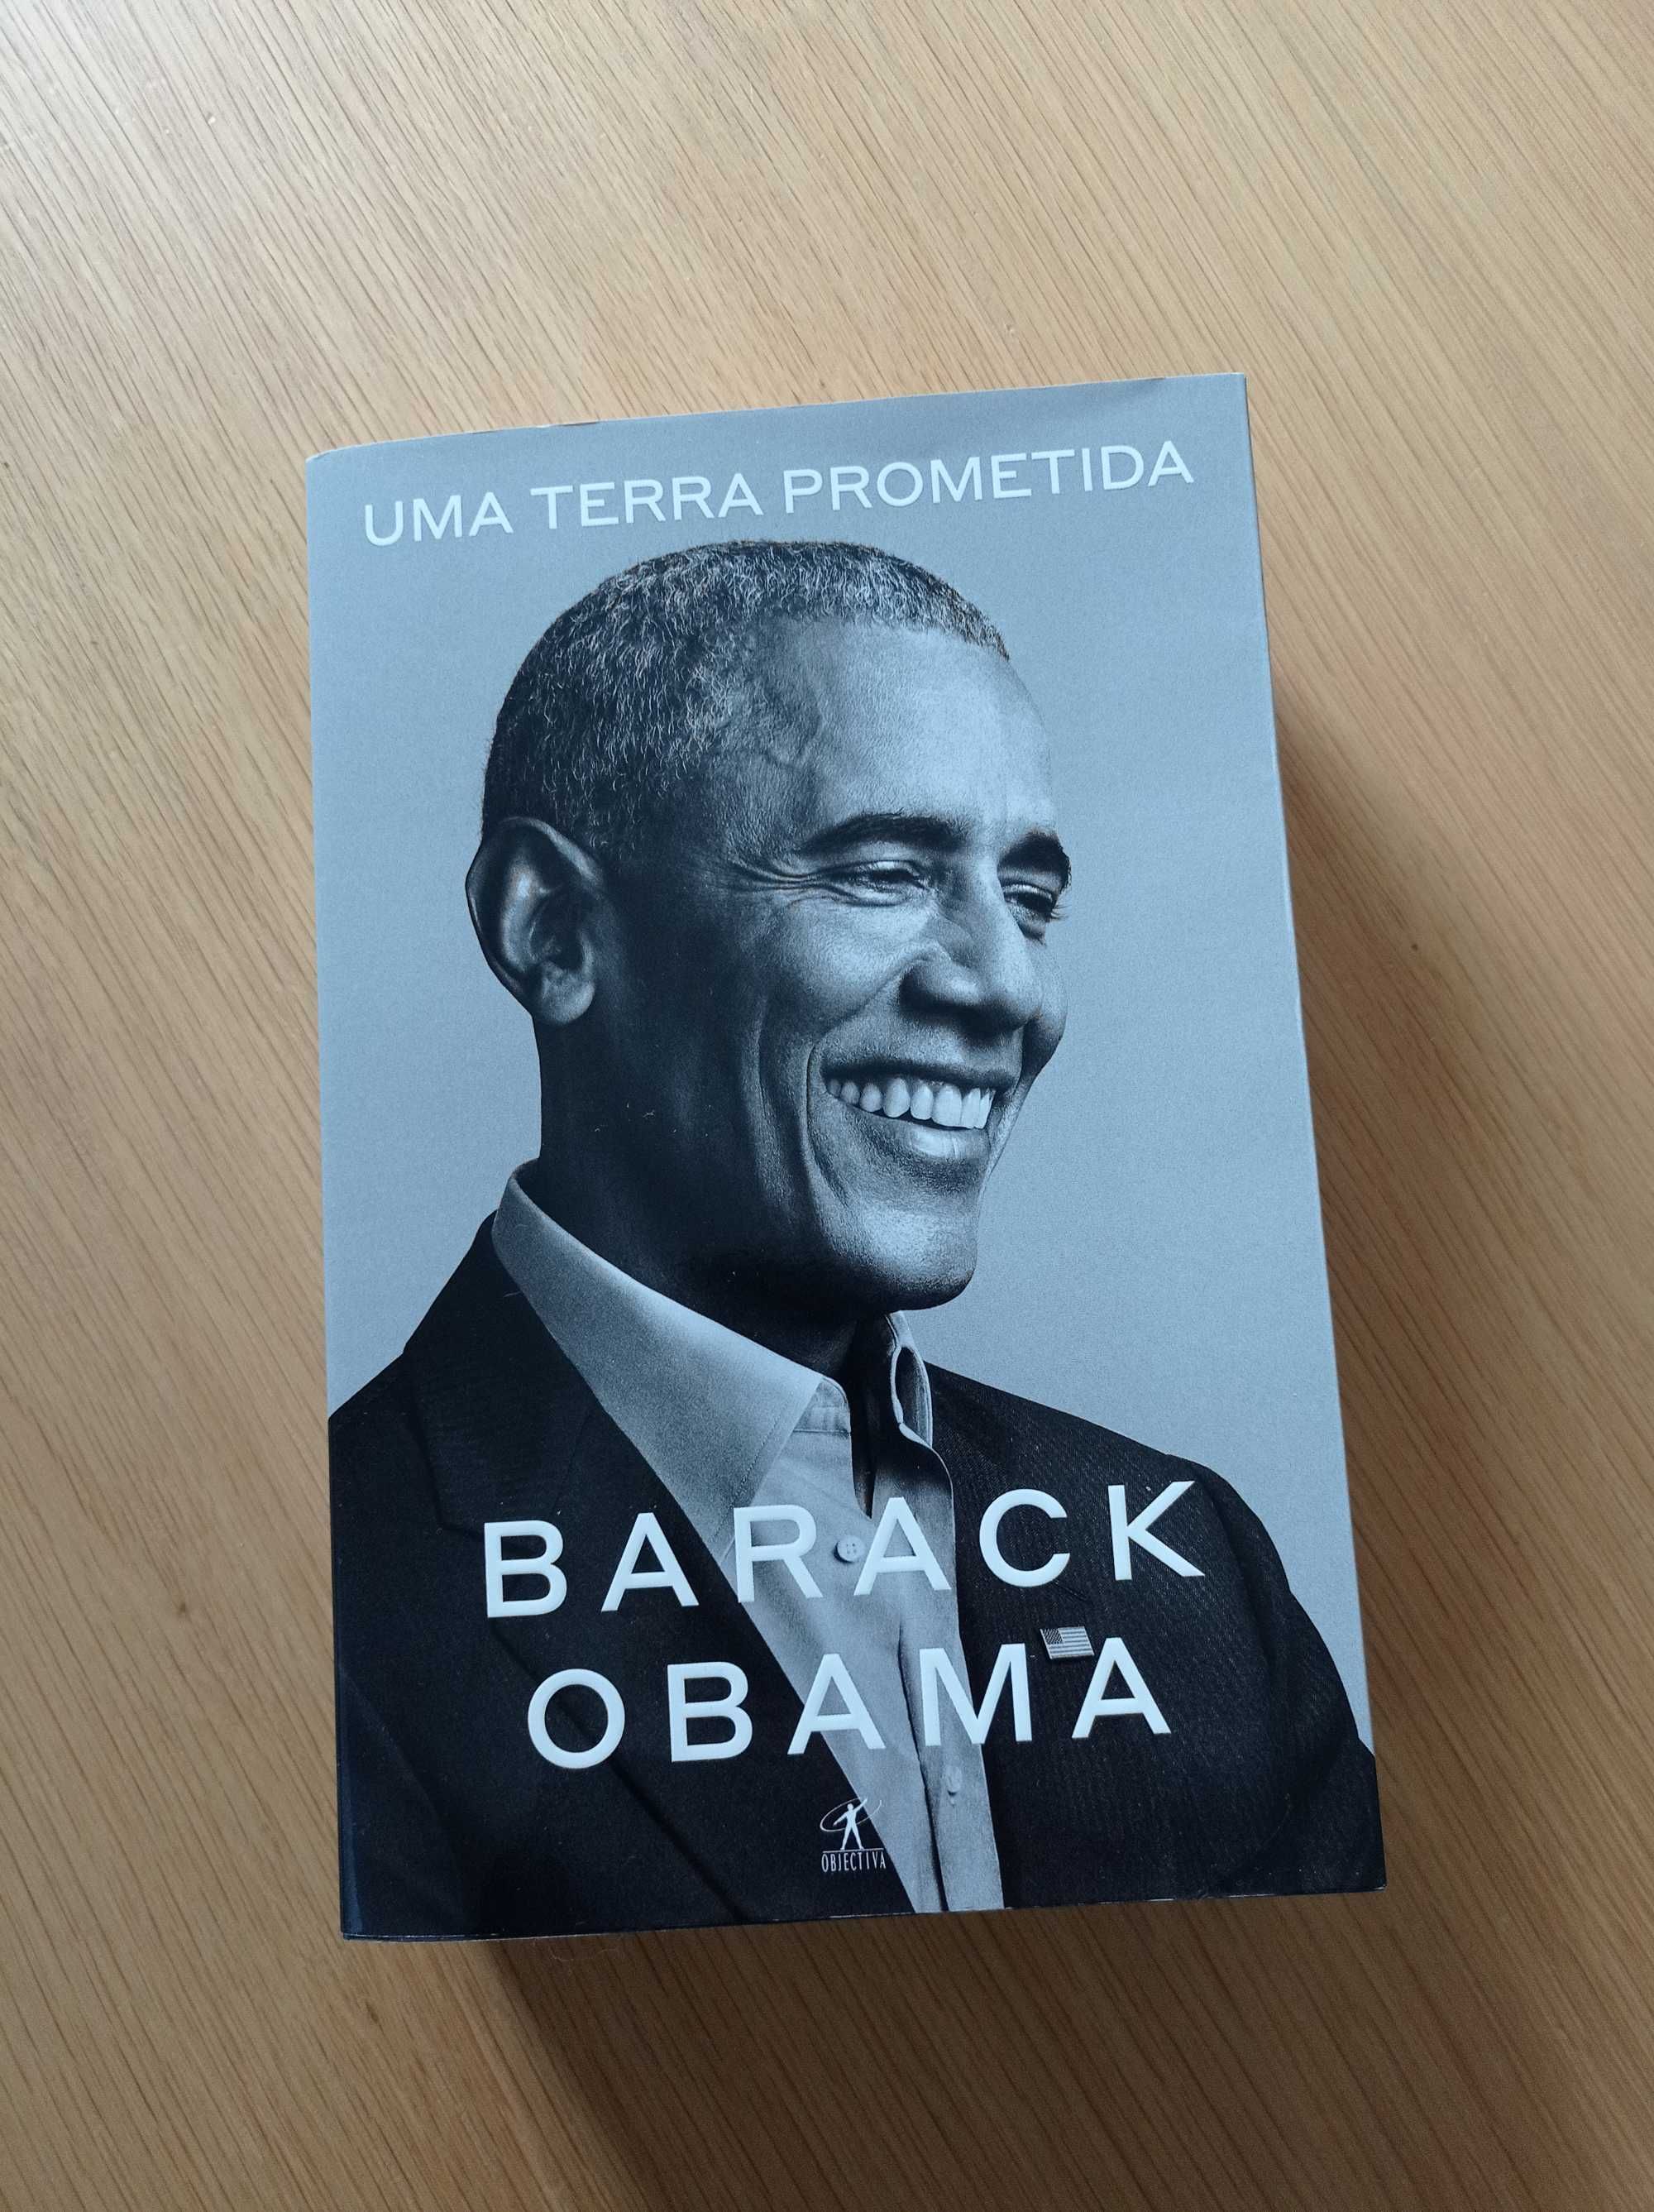 Livro "Uma Terra Prometida", Barack Obama